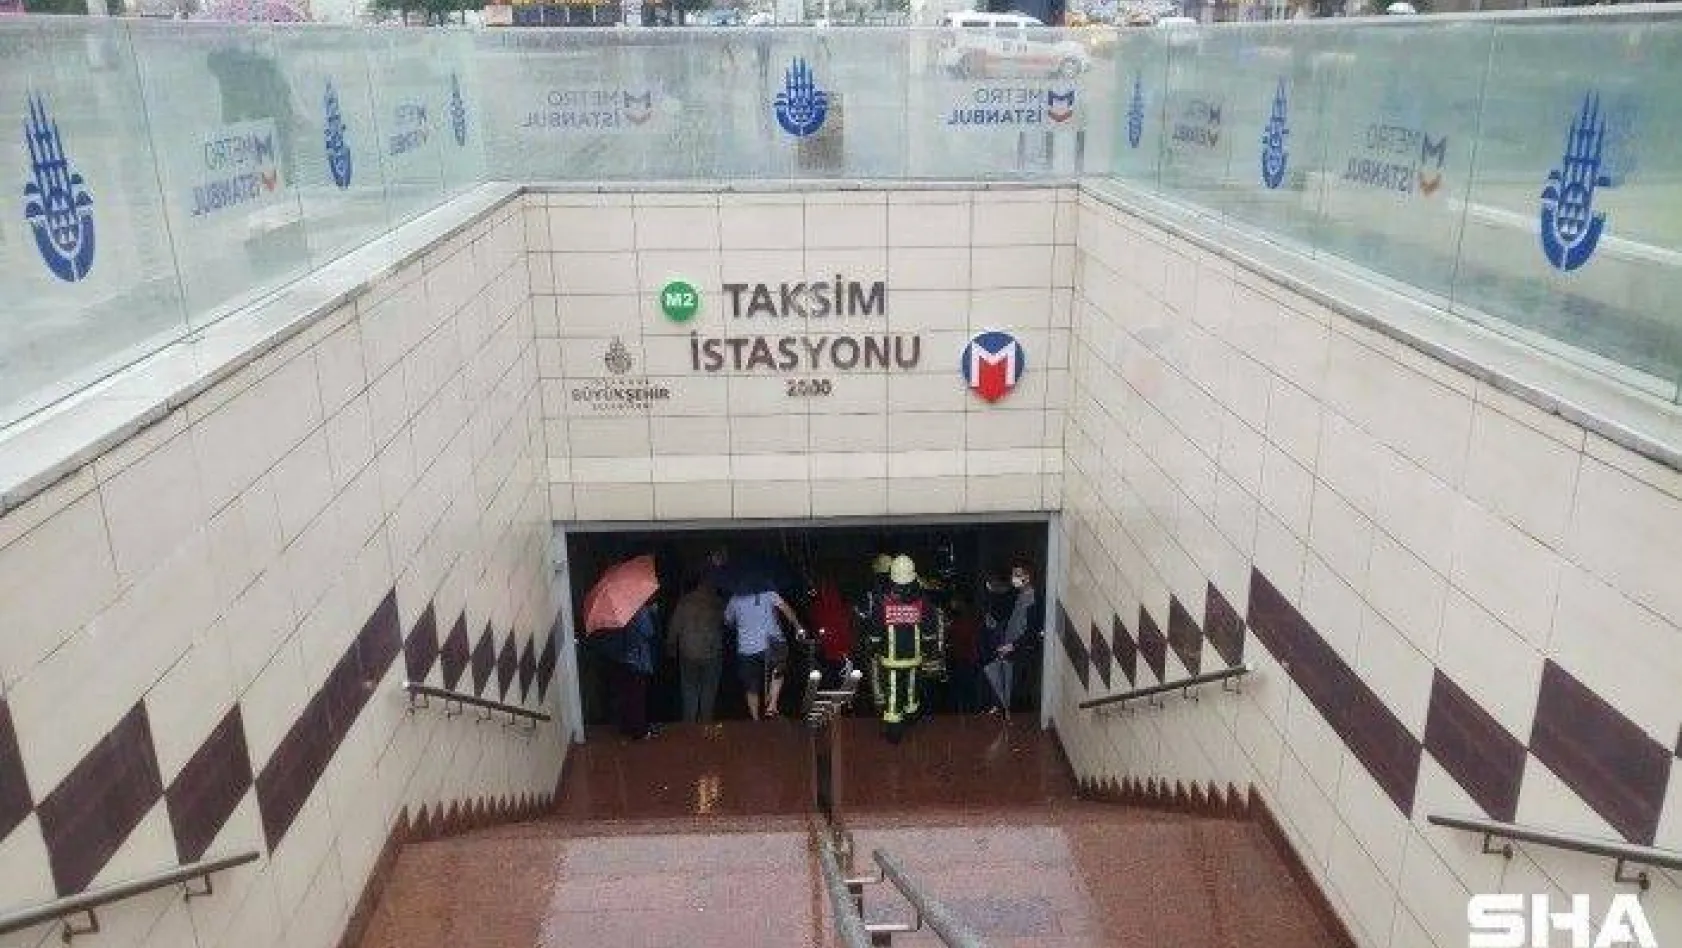 Taksim metroda bir kadın intihar girişiminde bulundu